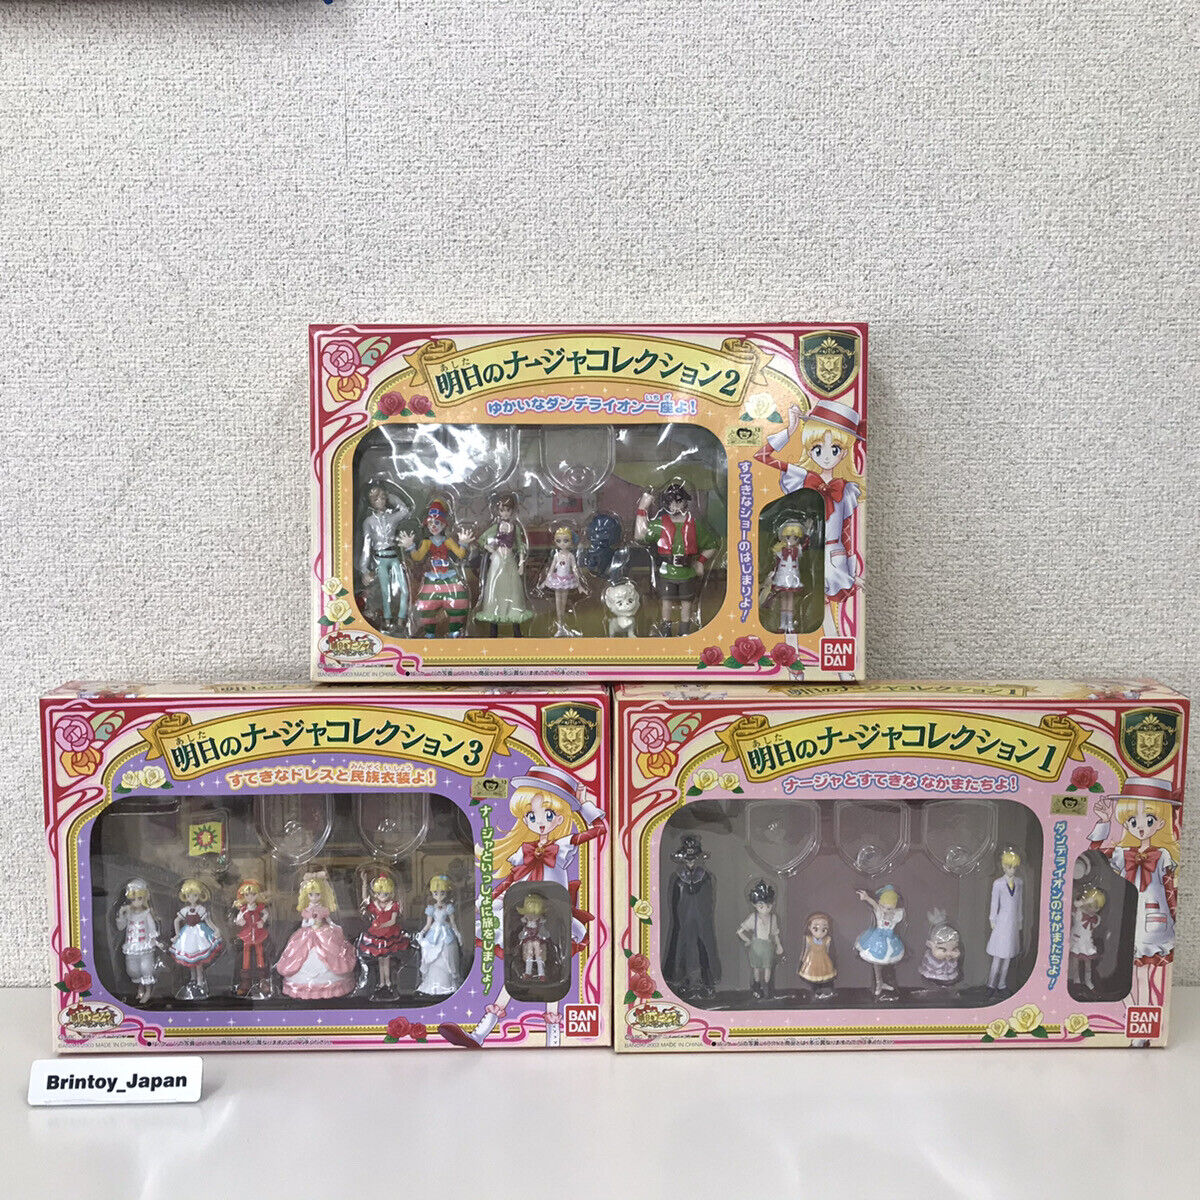 Bandai Ashita no Nadja Naja Collection 1 & 2 & 3 Figure Set Unopened From Japan